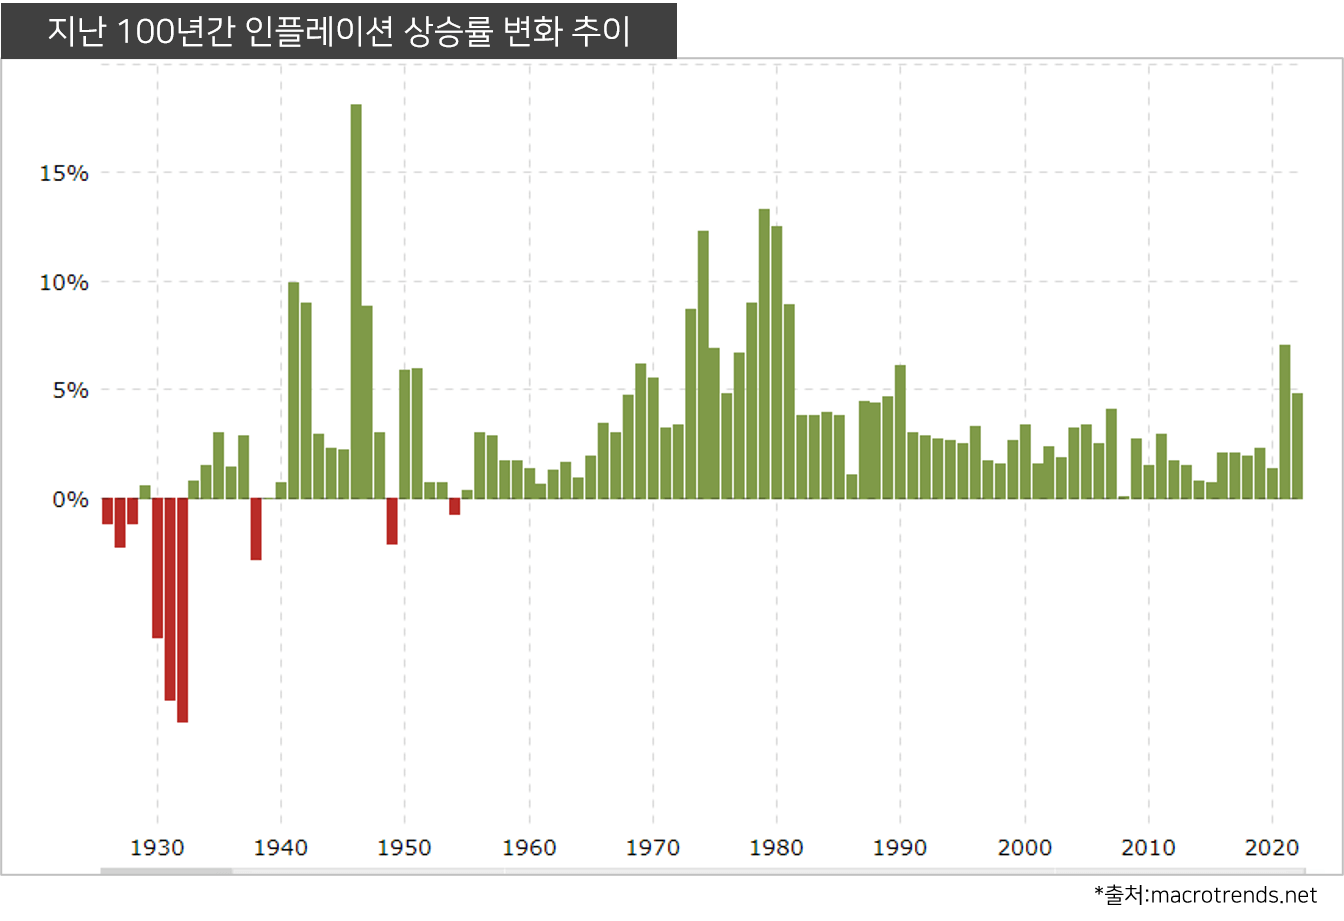 지난 100년간 연간 인플레이션 상승률